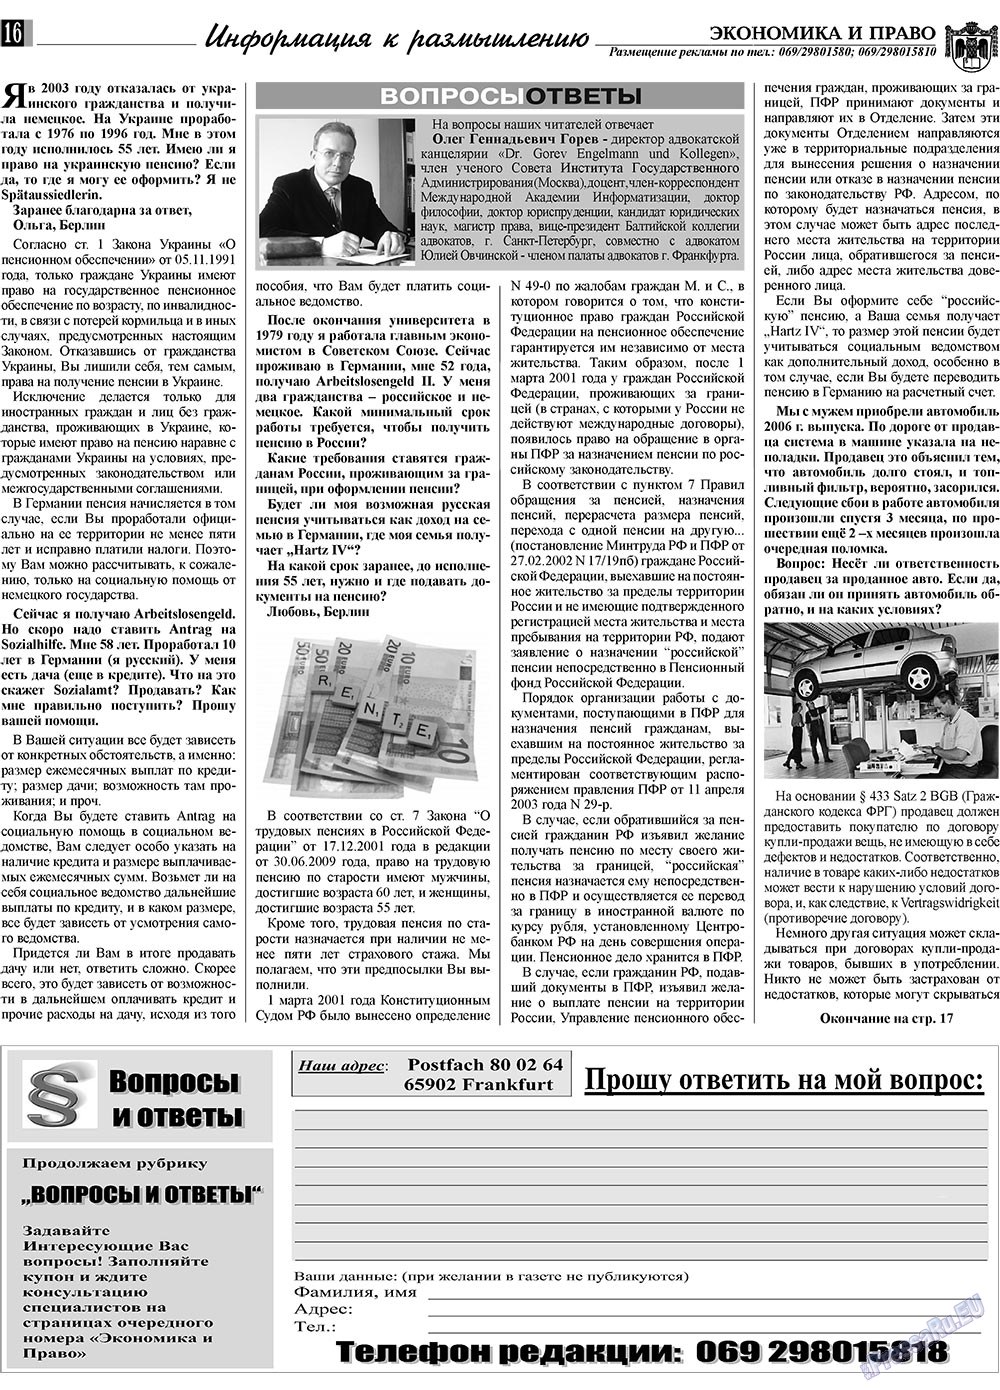 Экономика и право, газета. 2009 №10 стр.16